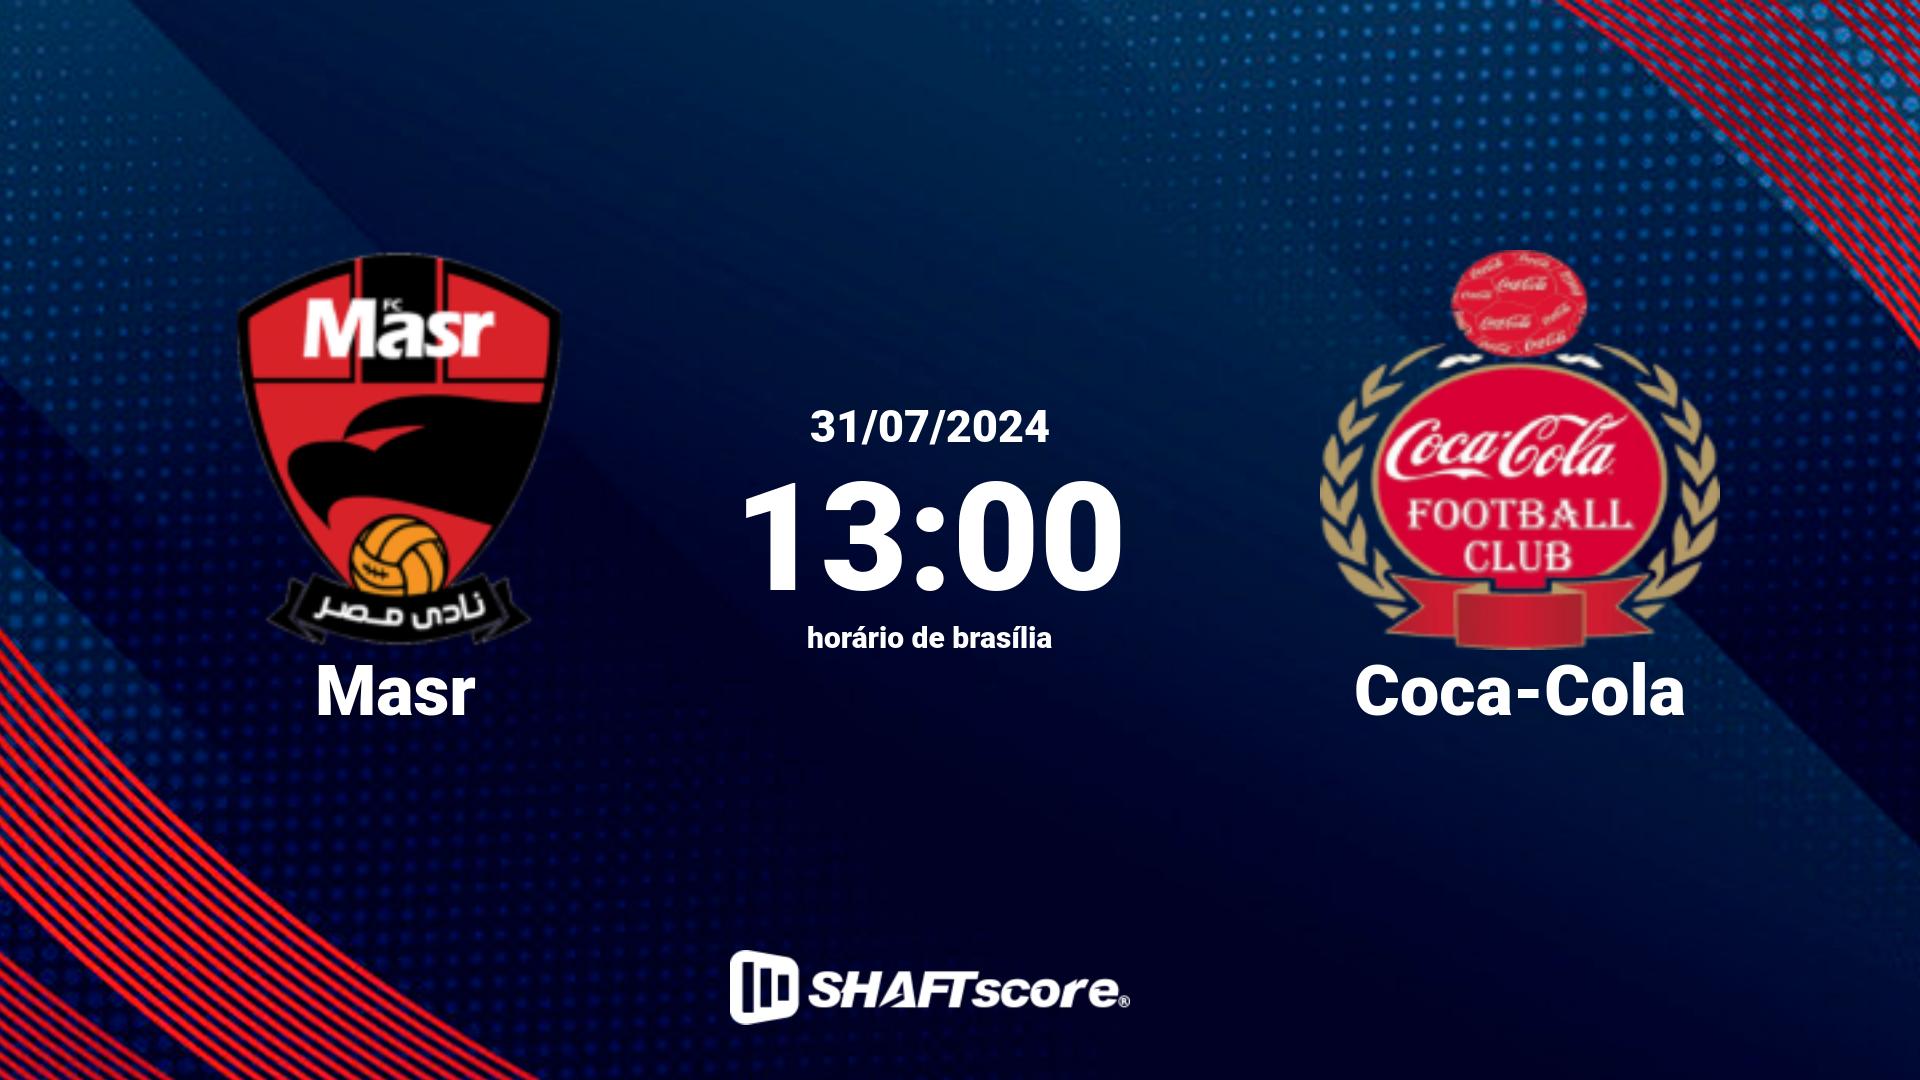 Estatísticas do jogo Masr vs Coca-Cola 31.07 13:00